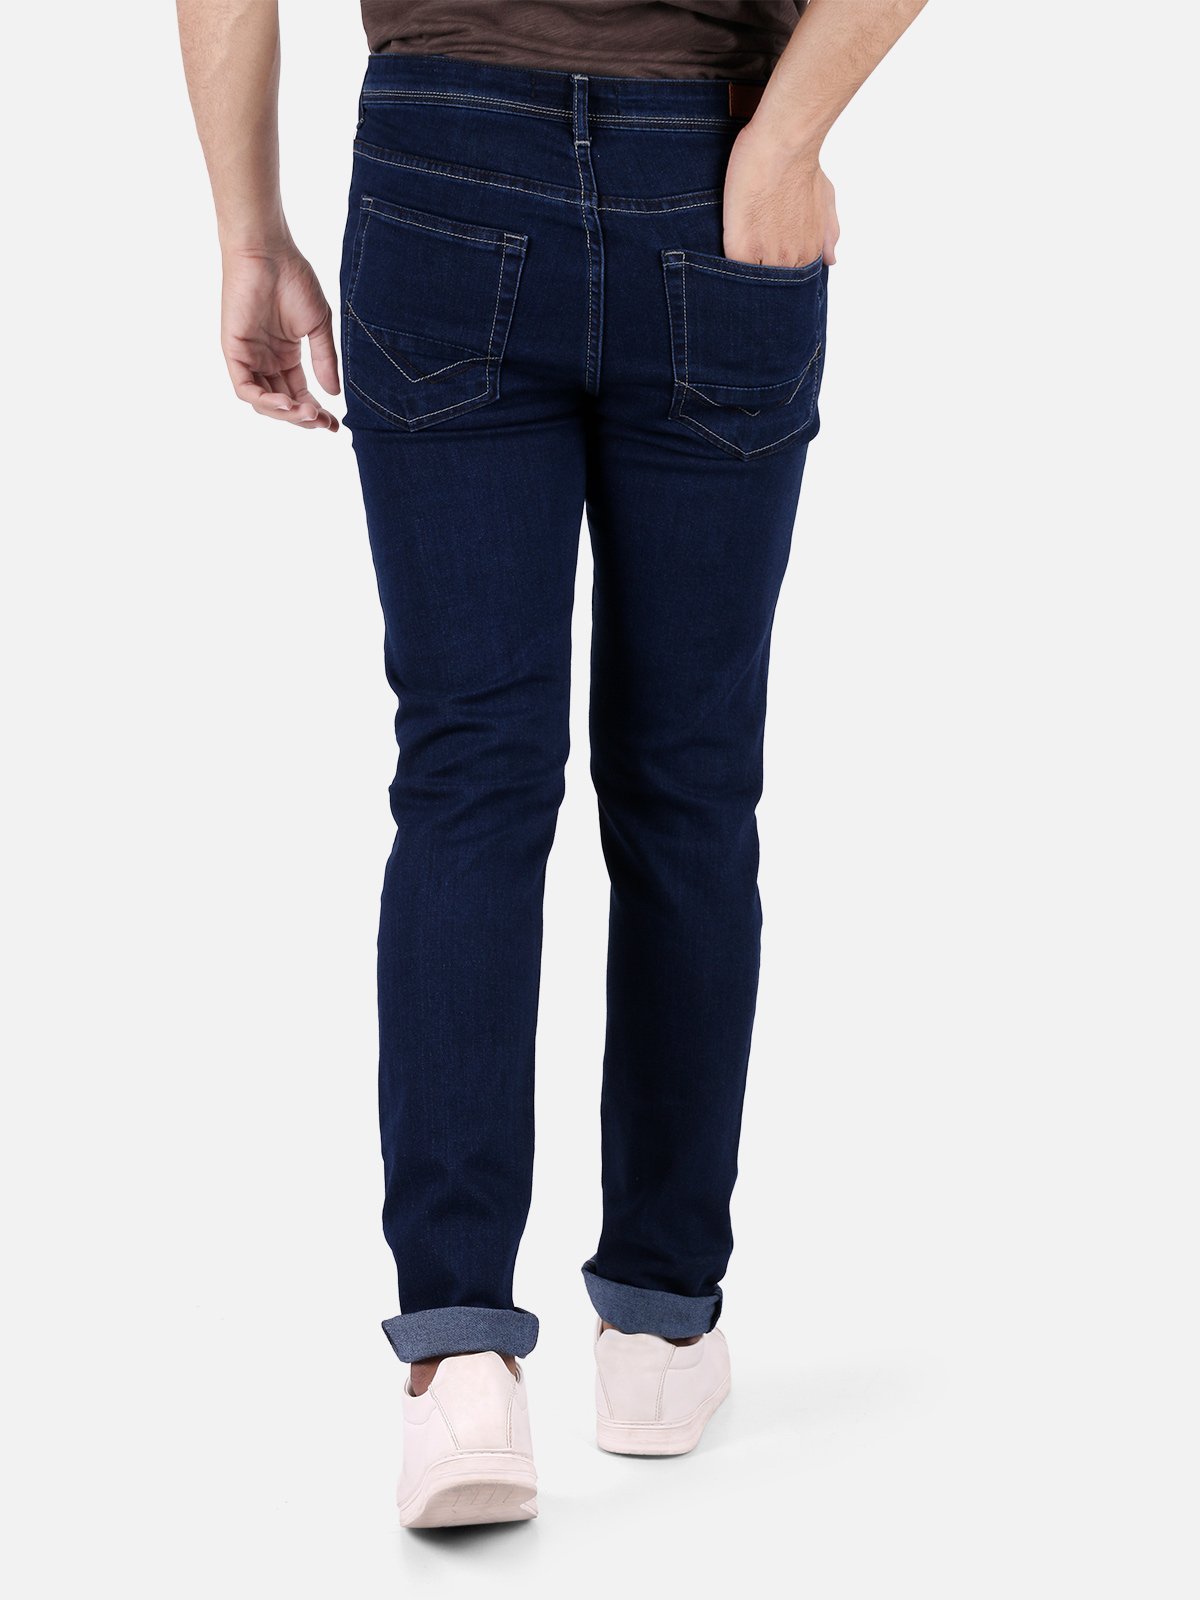 Men's Blue Denim Jeans - FMBP18-020